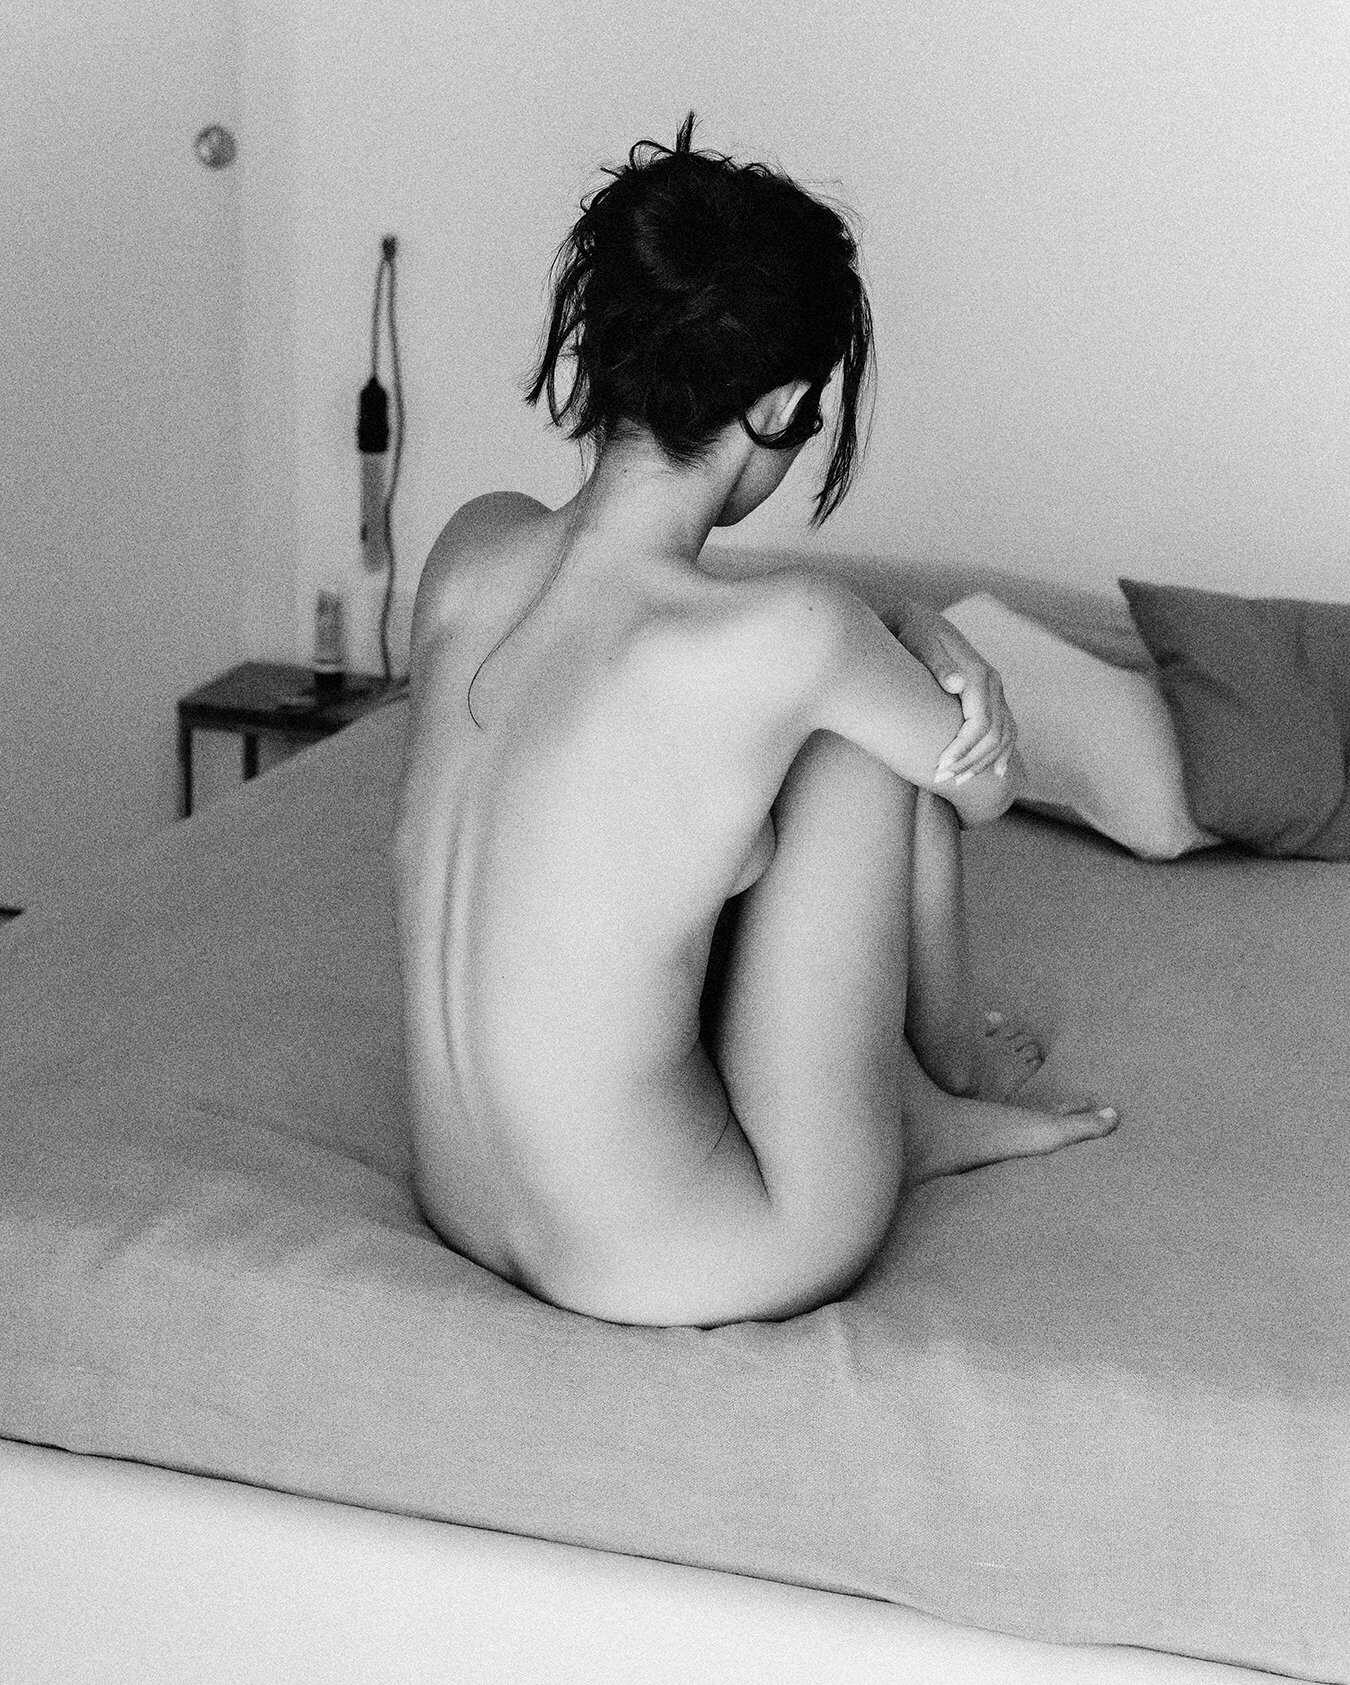 Γυμνές φωτογραφίες της μουνάρας Vallie Plagirafe